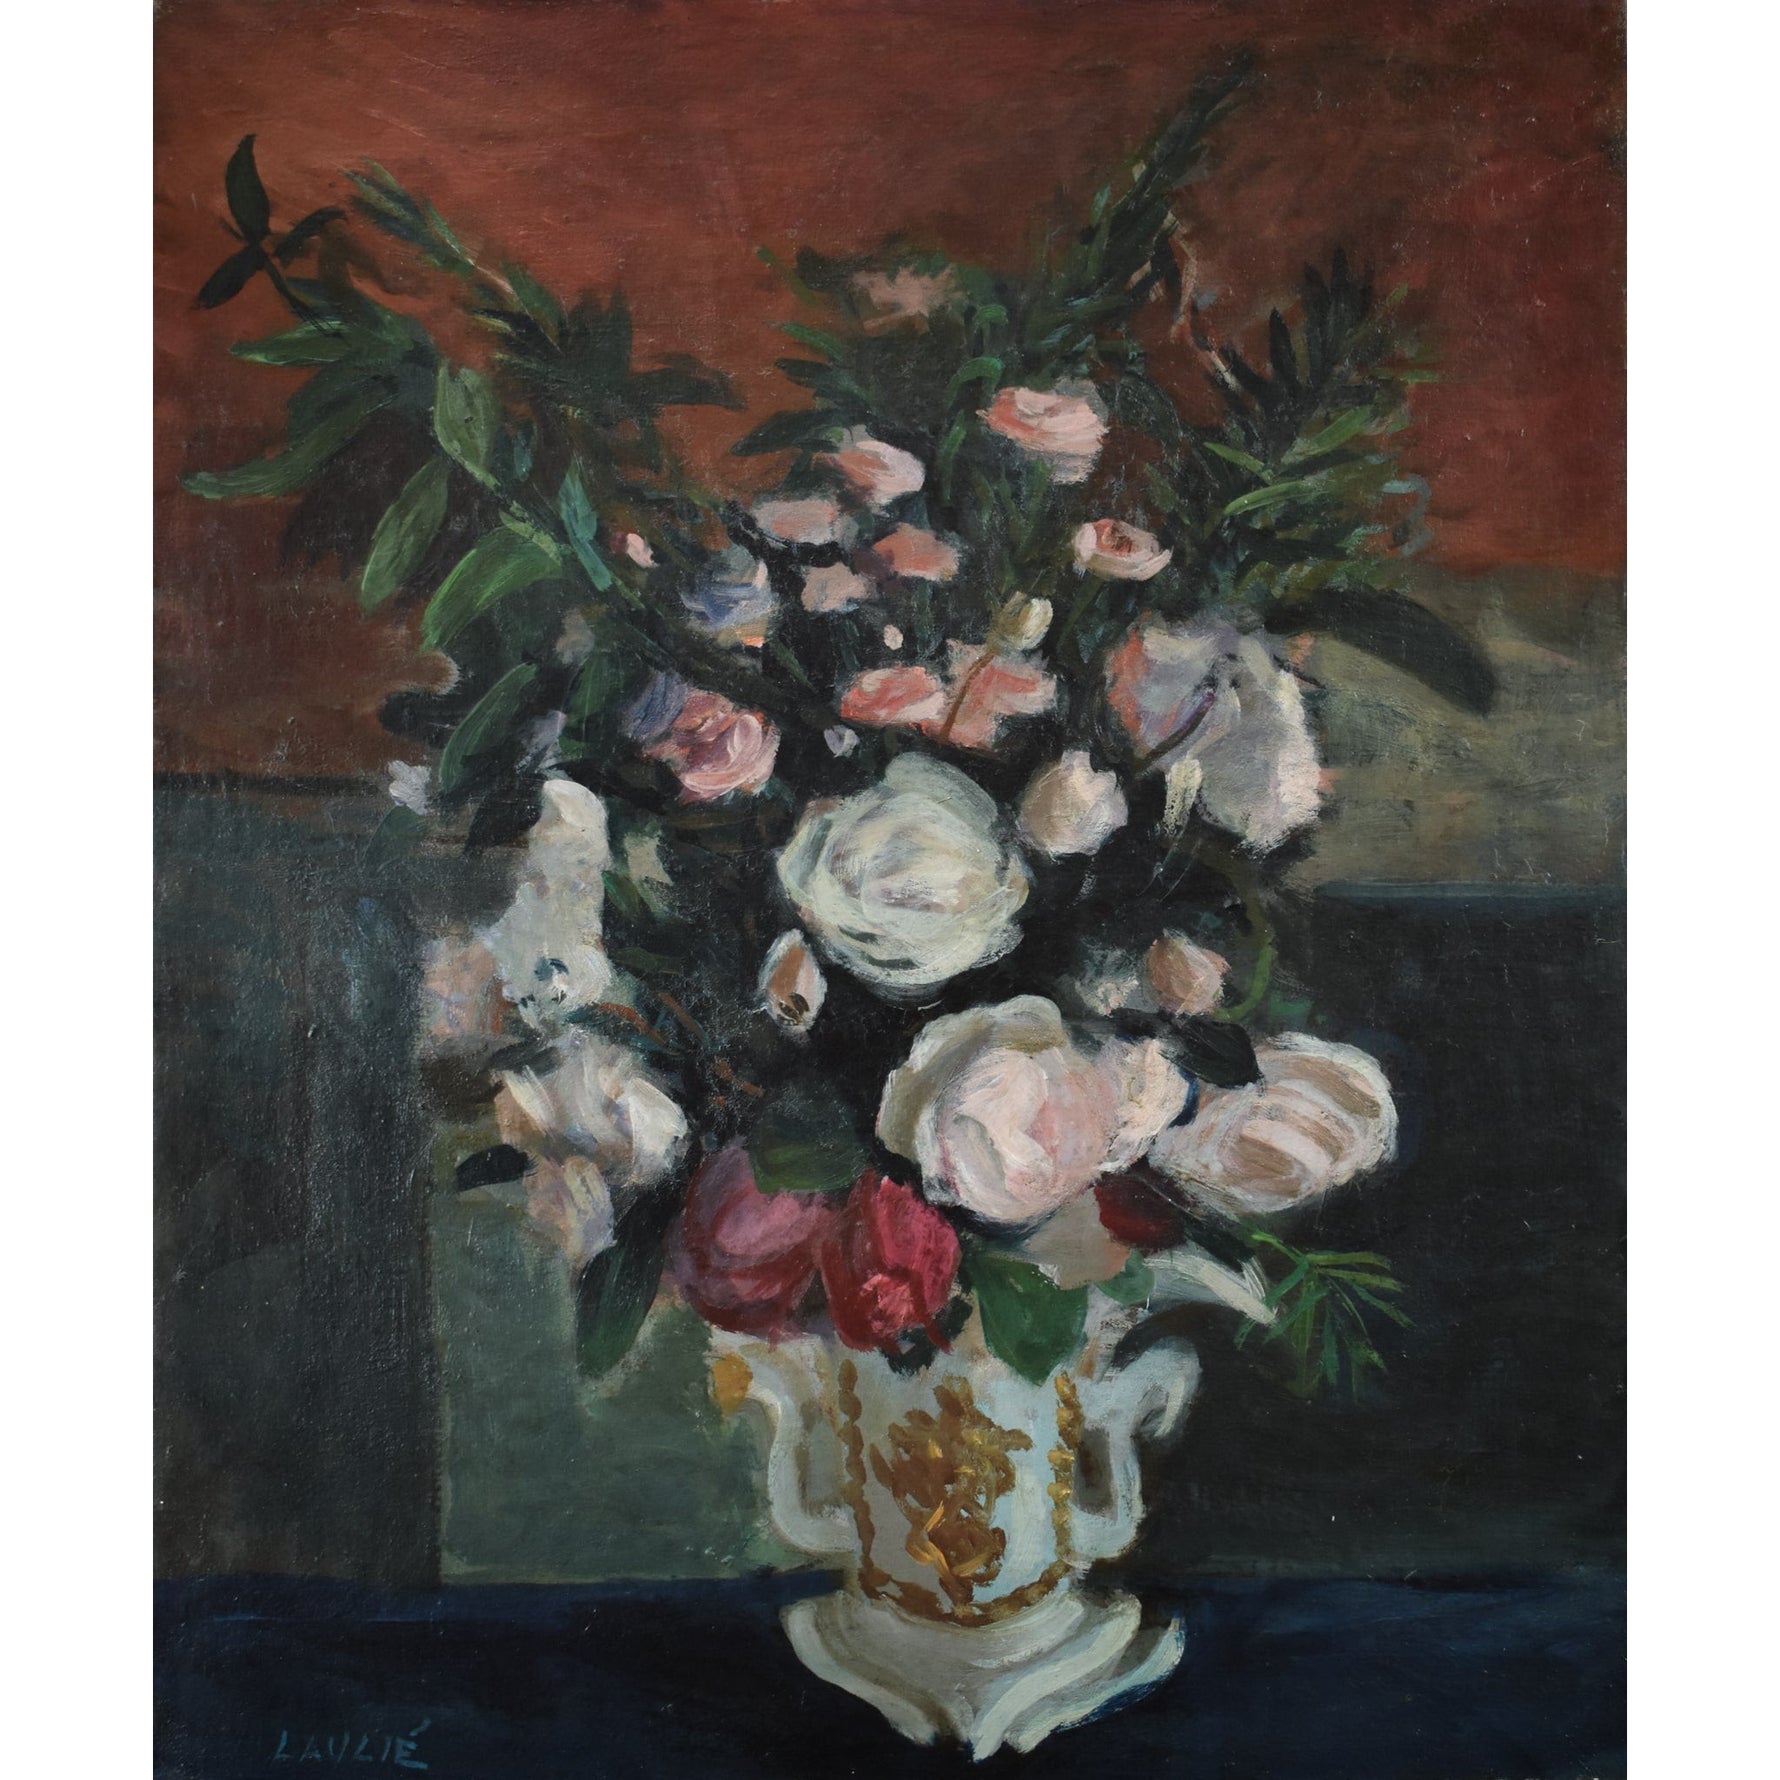 Joseph Laulié - Flowers Bouquet In A Vase - Winckelmann Gallery